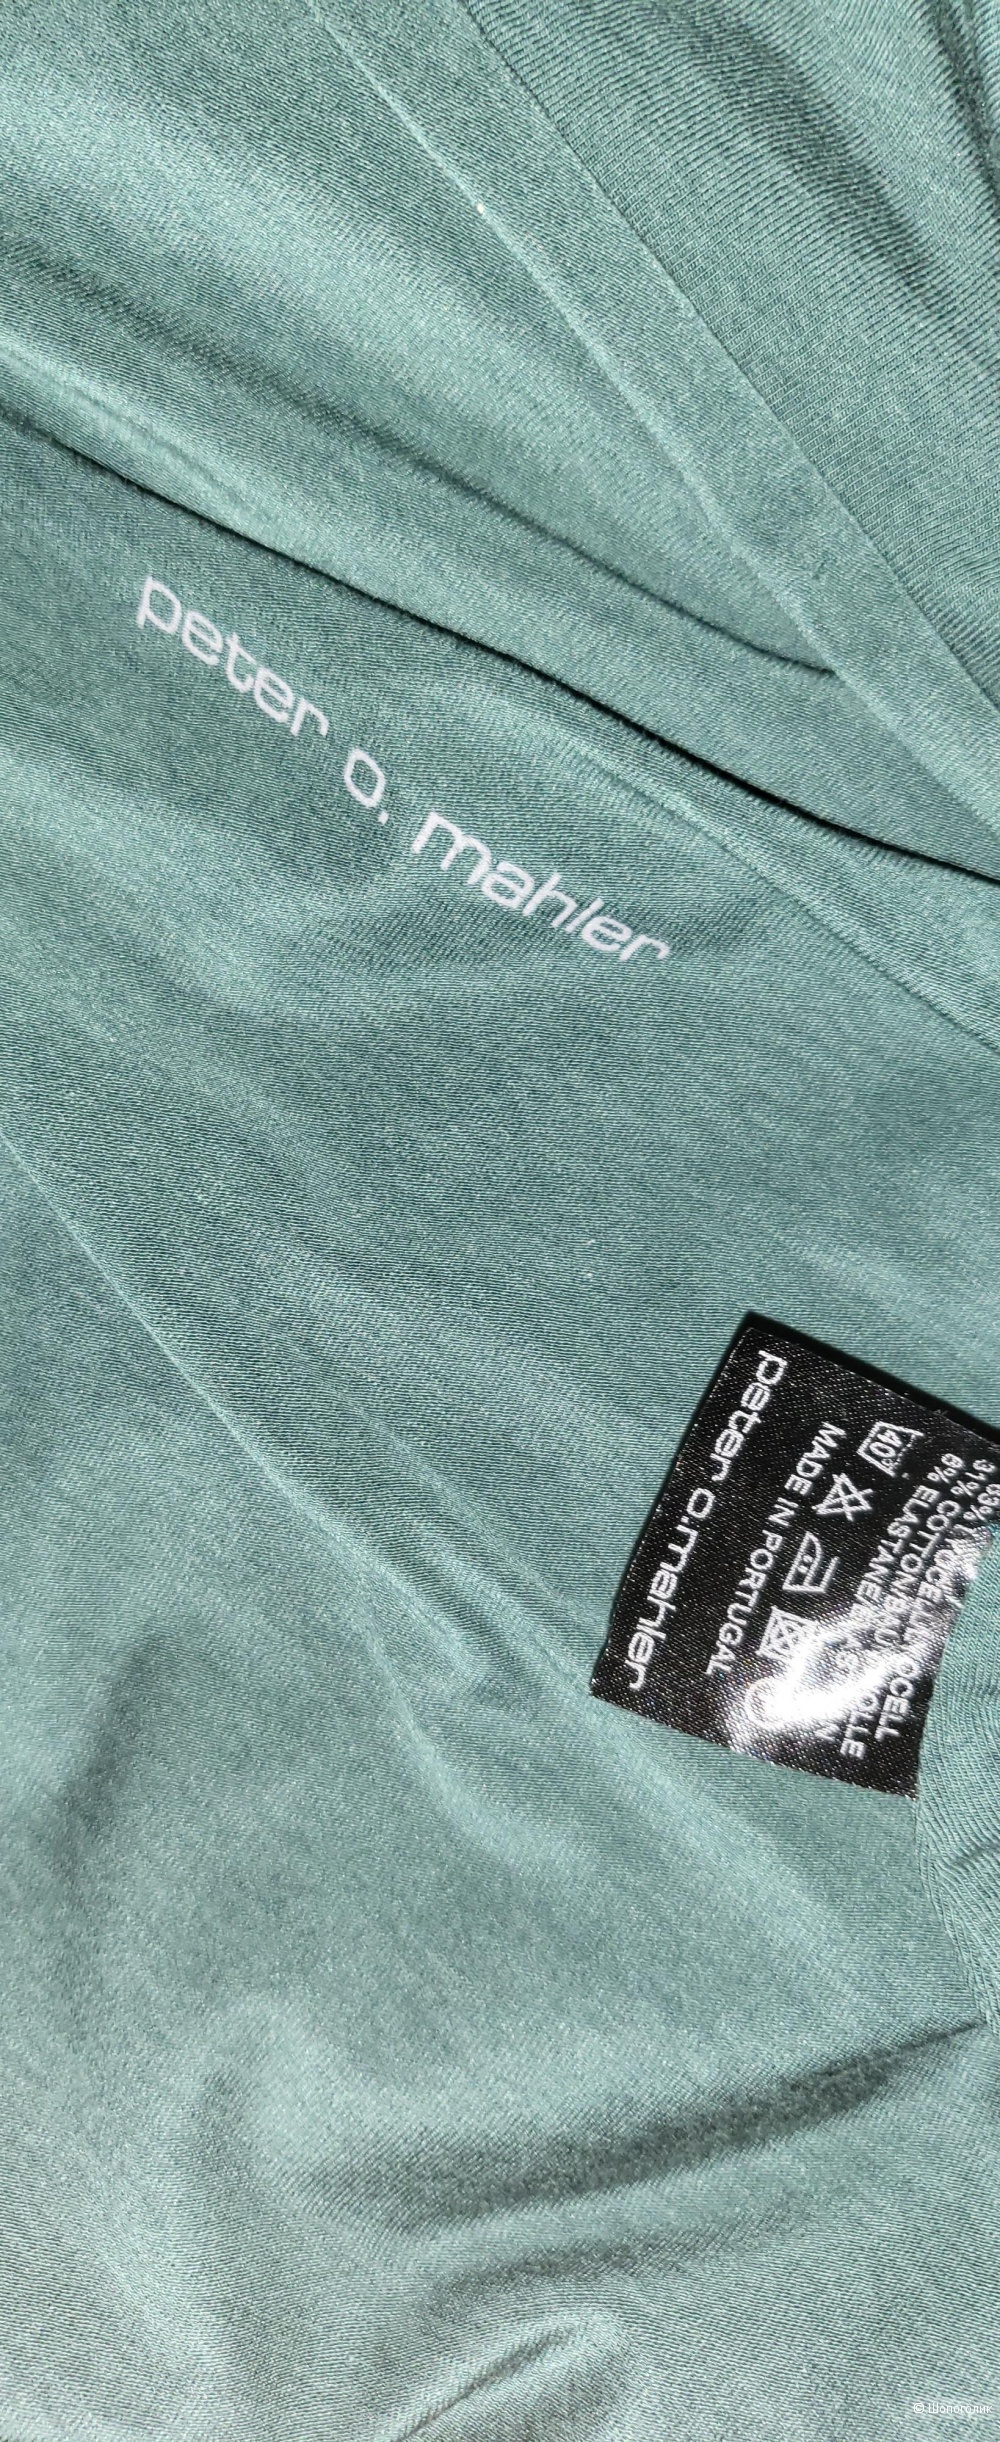 Платье  Peter O. Mahler, s- m